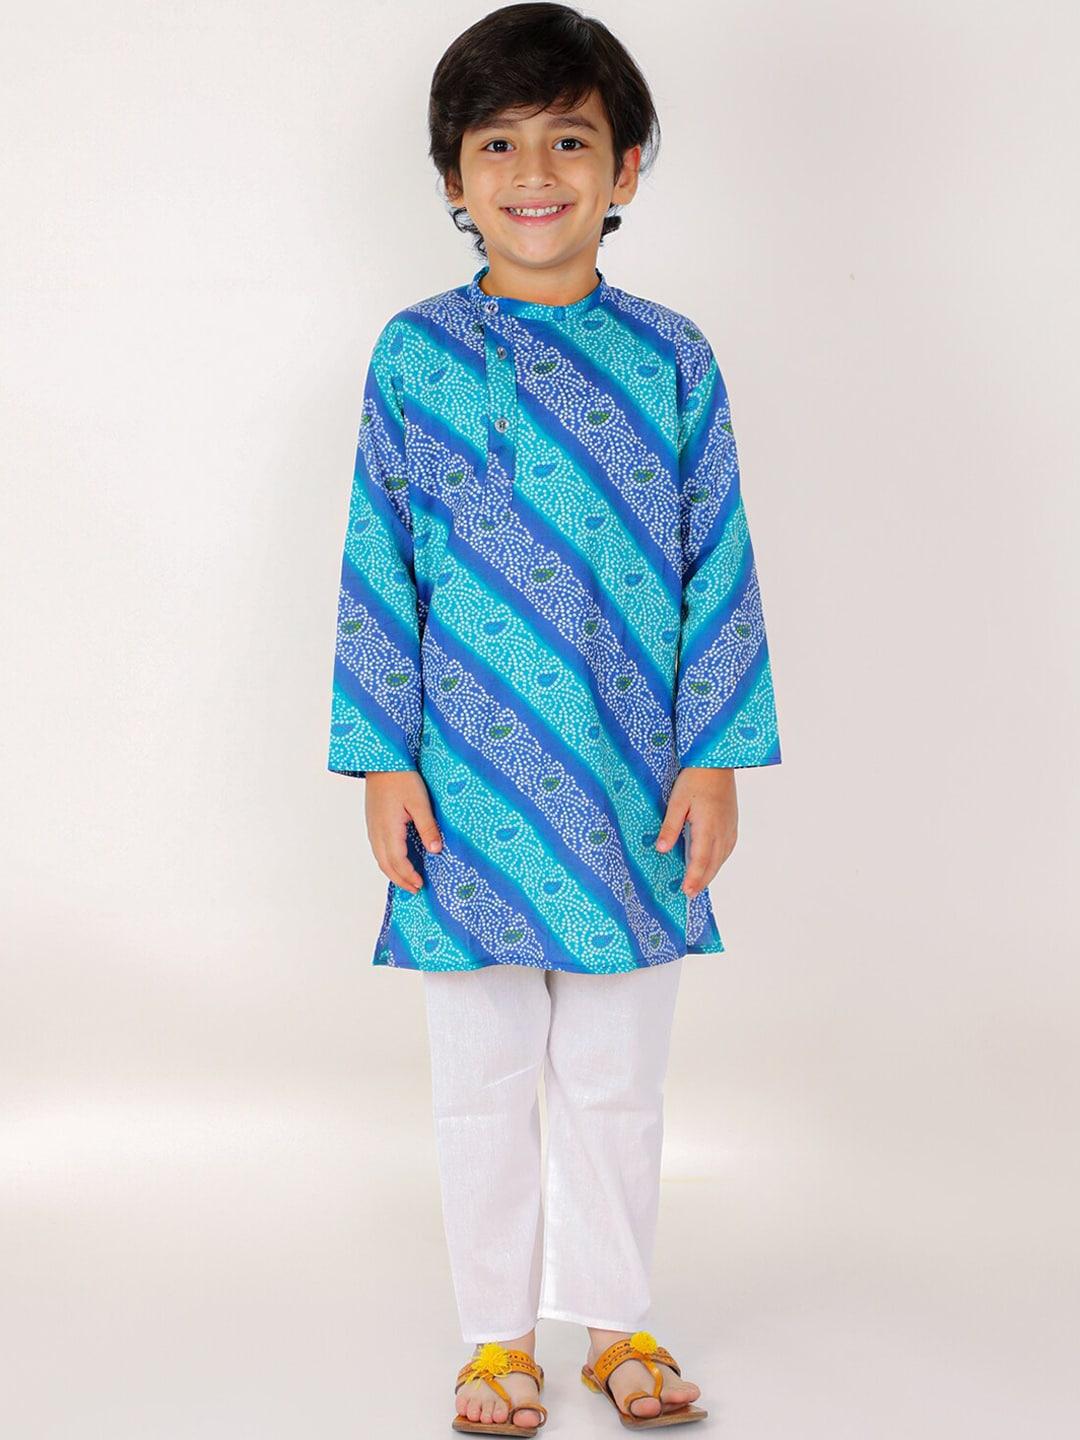 The Mom Store Boys Blue Bandhani Printed Pure Cotton Kurta with Pyjamas